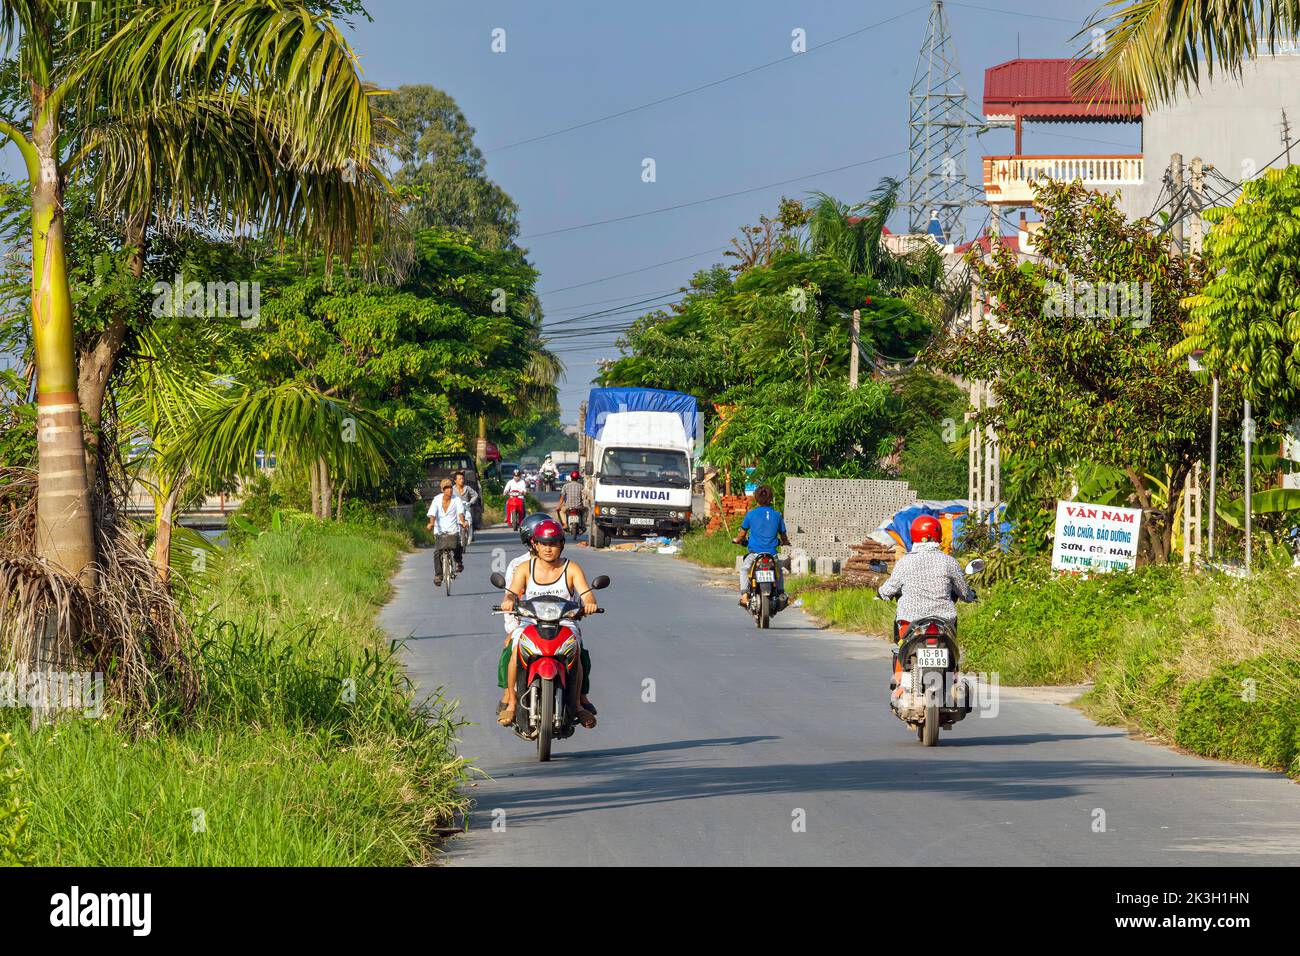 Motocicletas y el tráfico en la carretera rural, Hai Phong, Vietnam Foto de stock